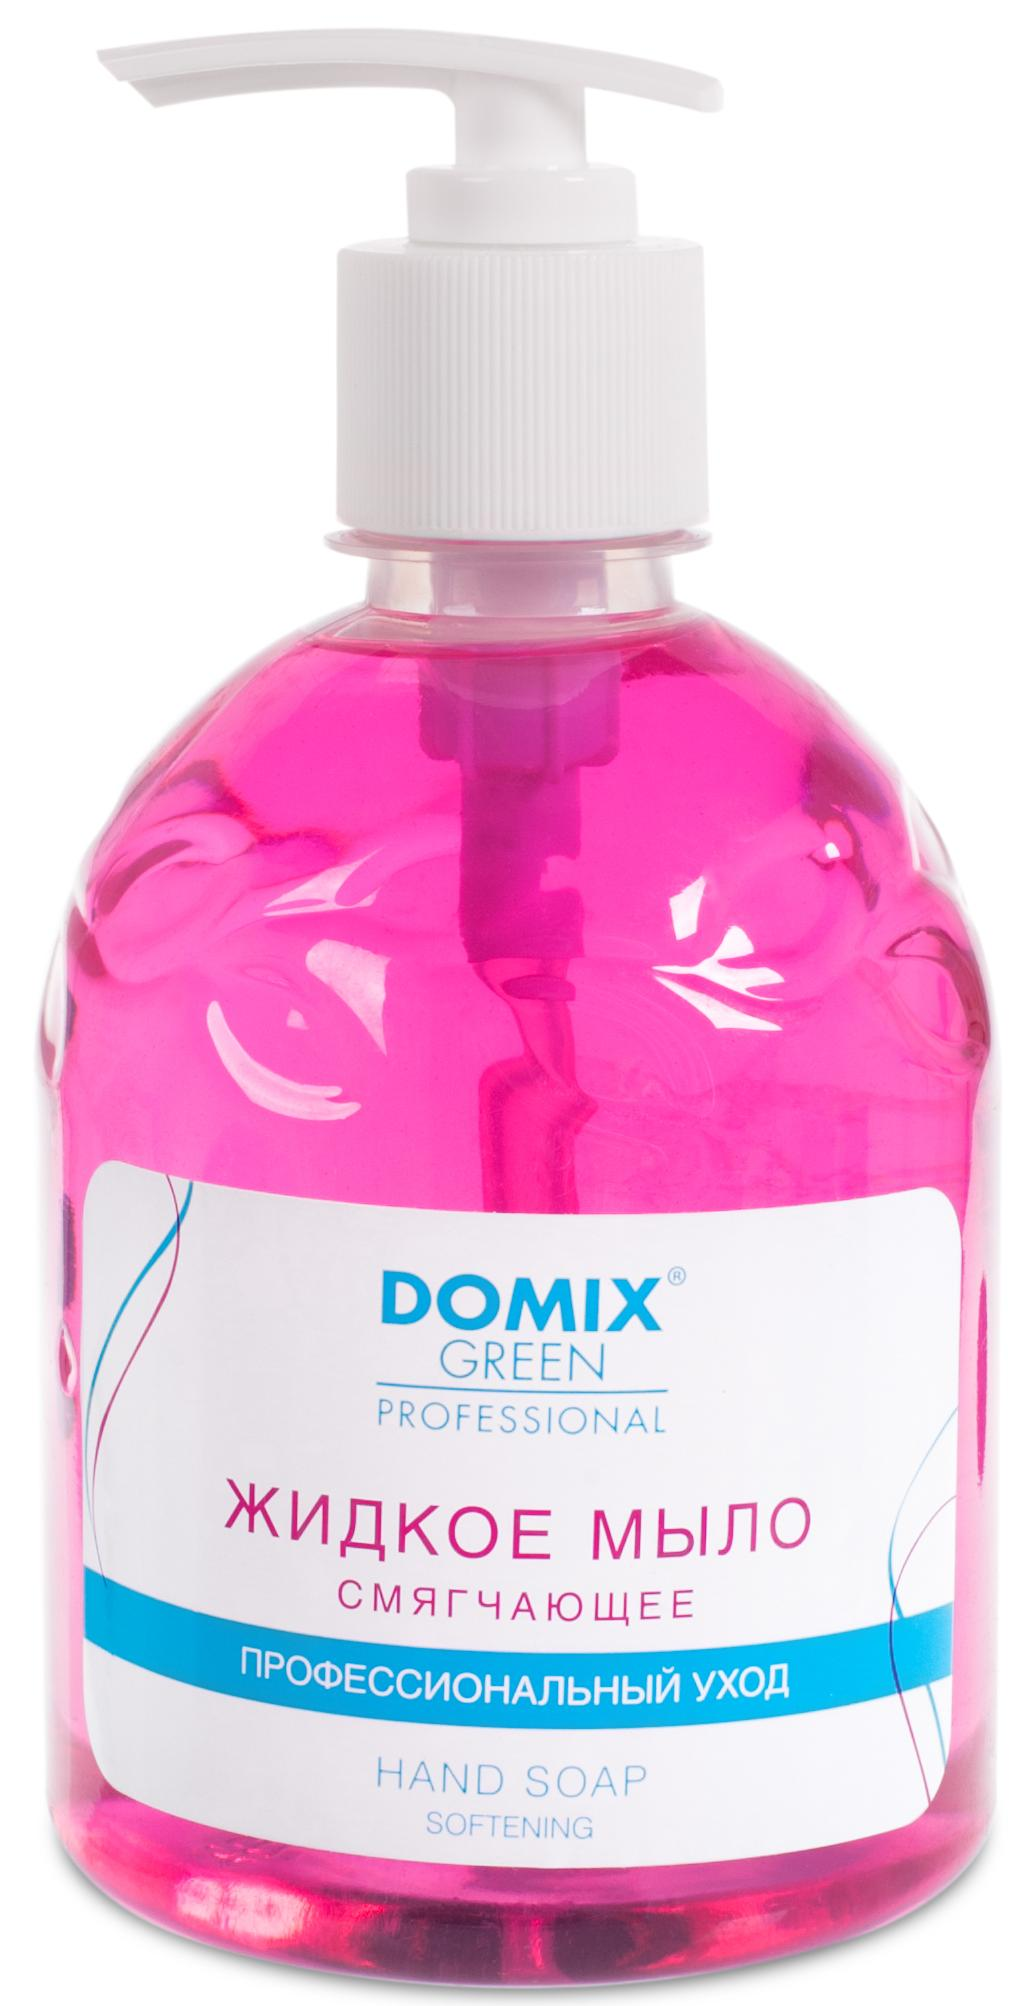 DOMIX Мыло жидкое смягчающее для профессионального ухода / DGP 500 мл felce azzurra жидкое мыло увлажнение белый мускус moisturizing white musk liquid soap